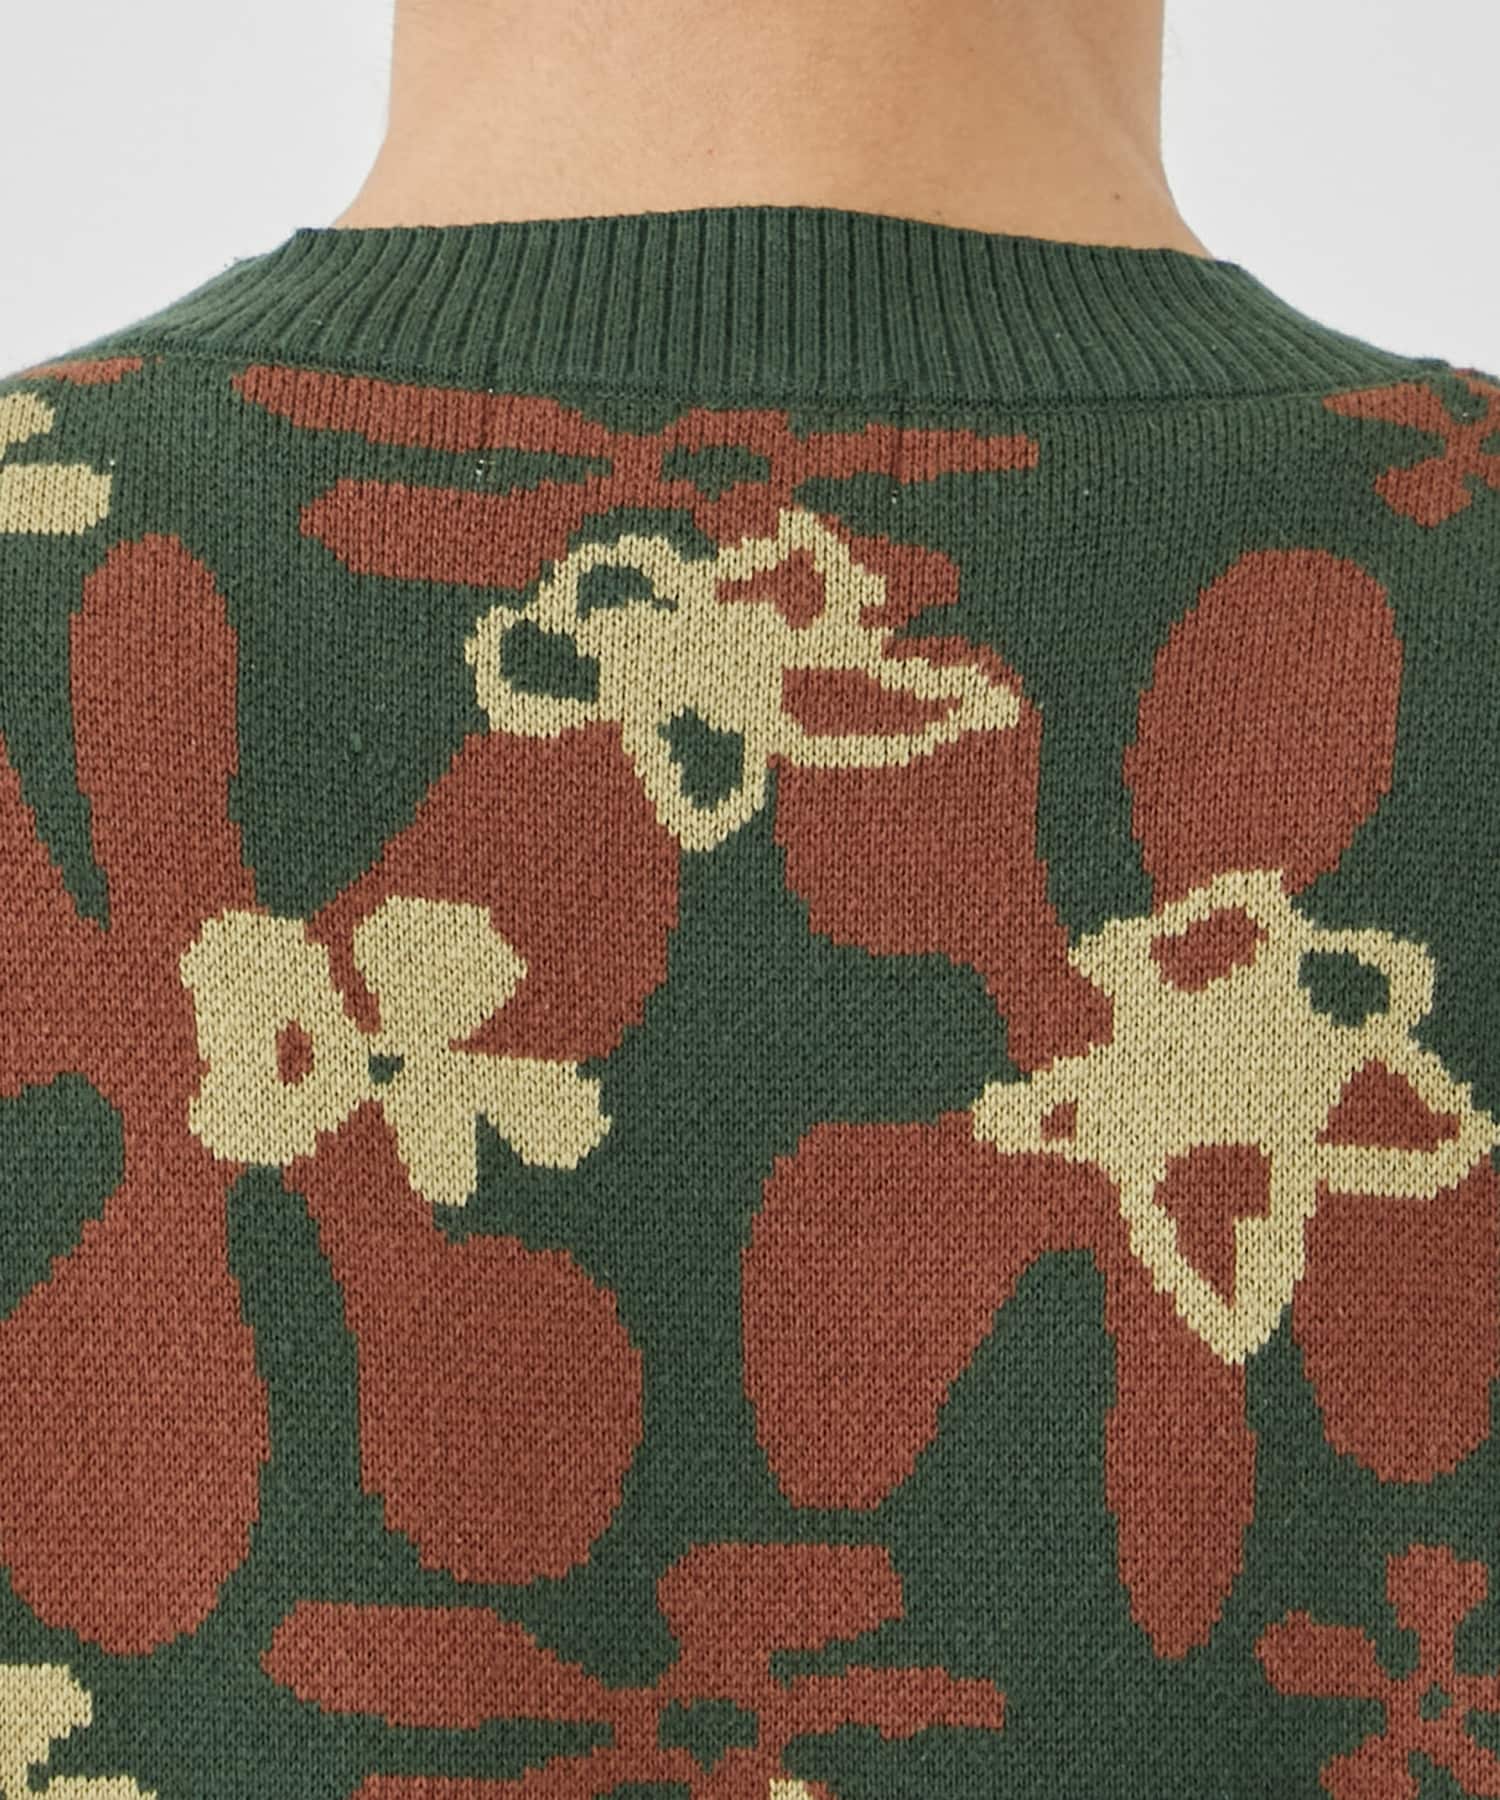 Flower camo knit  vest TTT MSW